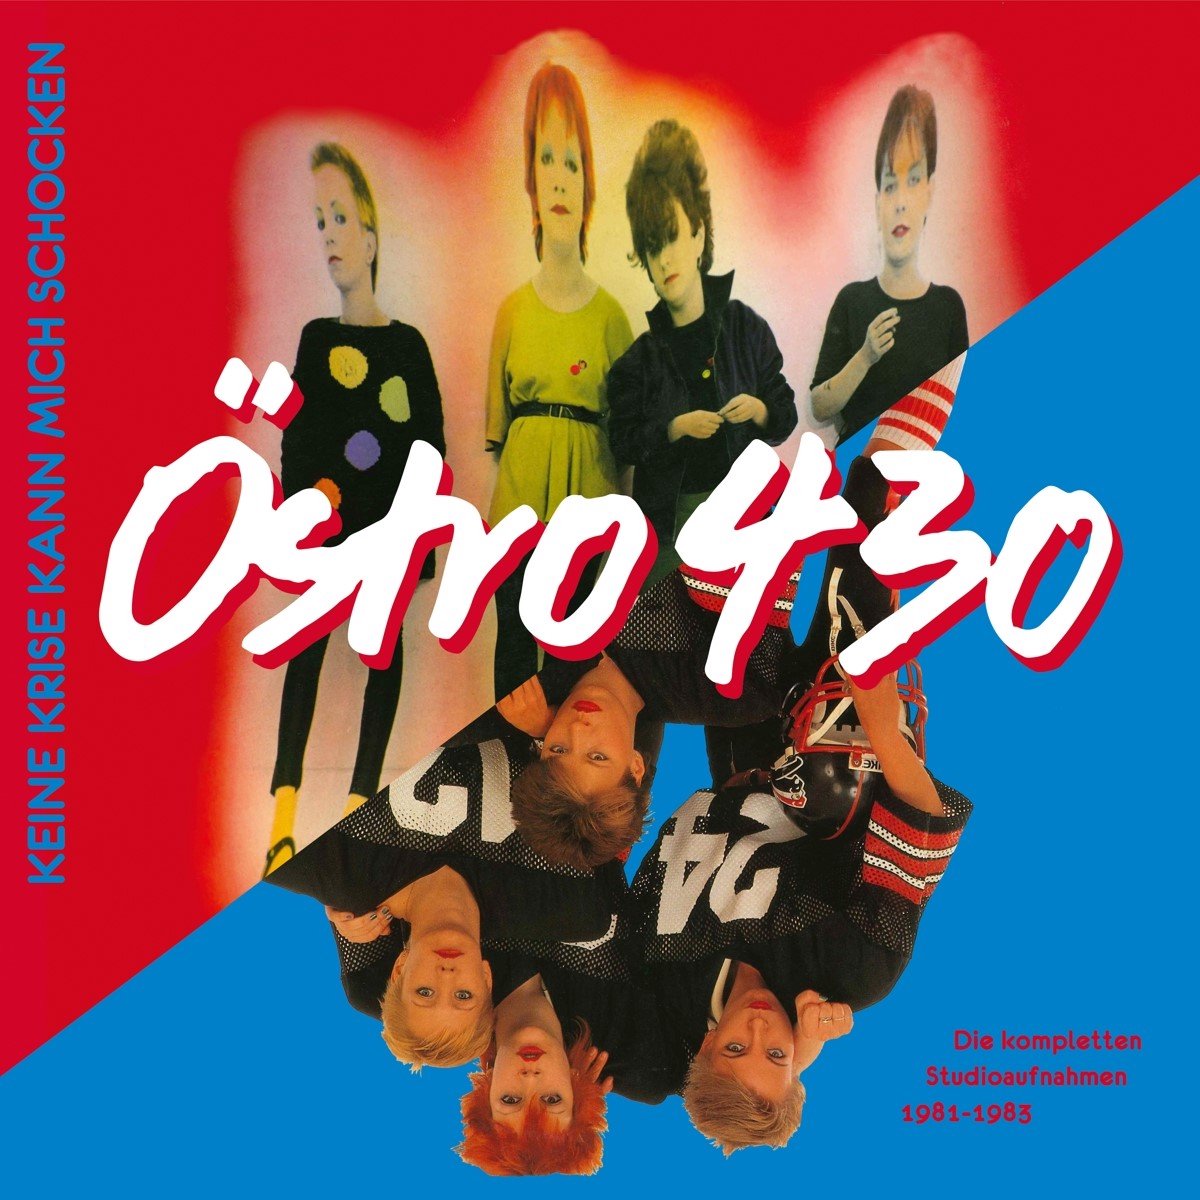 Ostro 430 - Keine Krise Kann Mich Schocken (CD) - Ostro 430